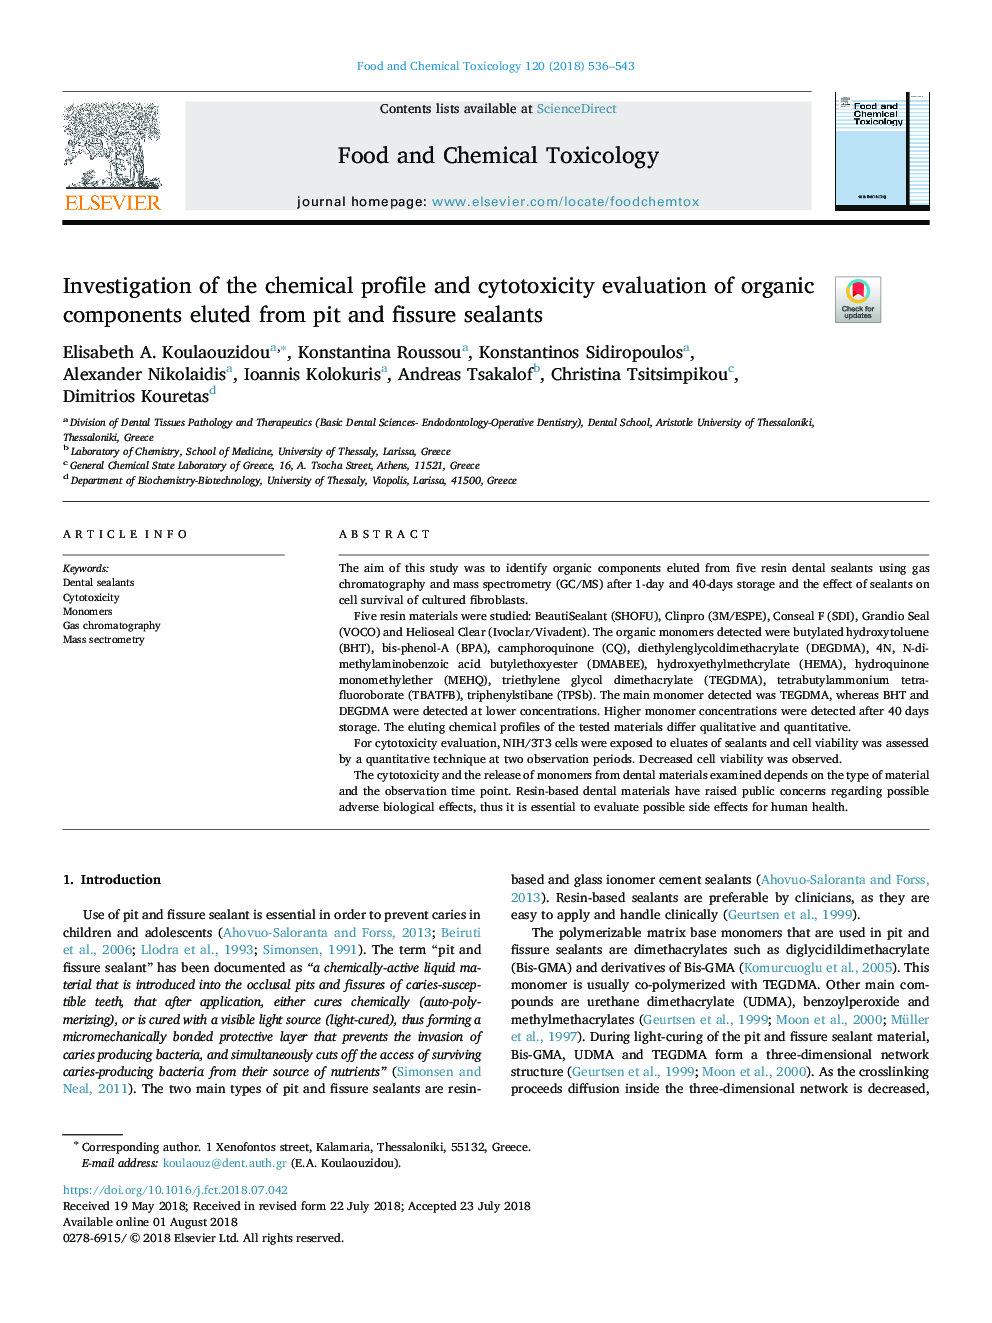 بررسی مشخصات شیمیایی و ارزیابی سمیت مسمومیت ترکیبات ارگانیکی که از سیلانت های گودال و فیشور جدا شده اند 